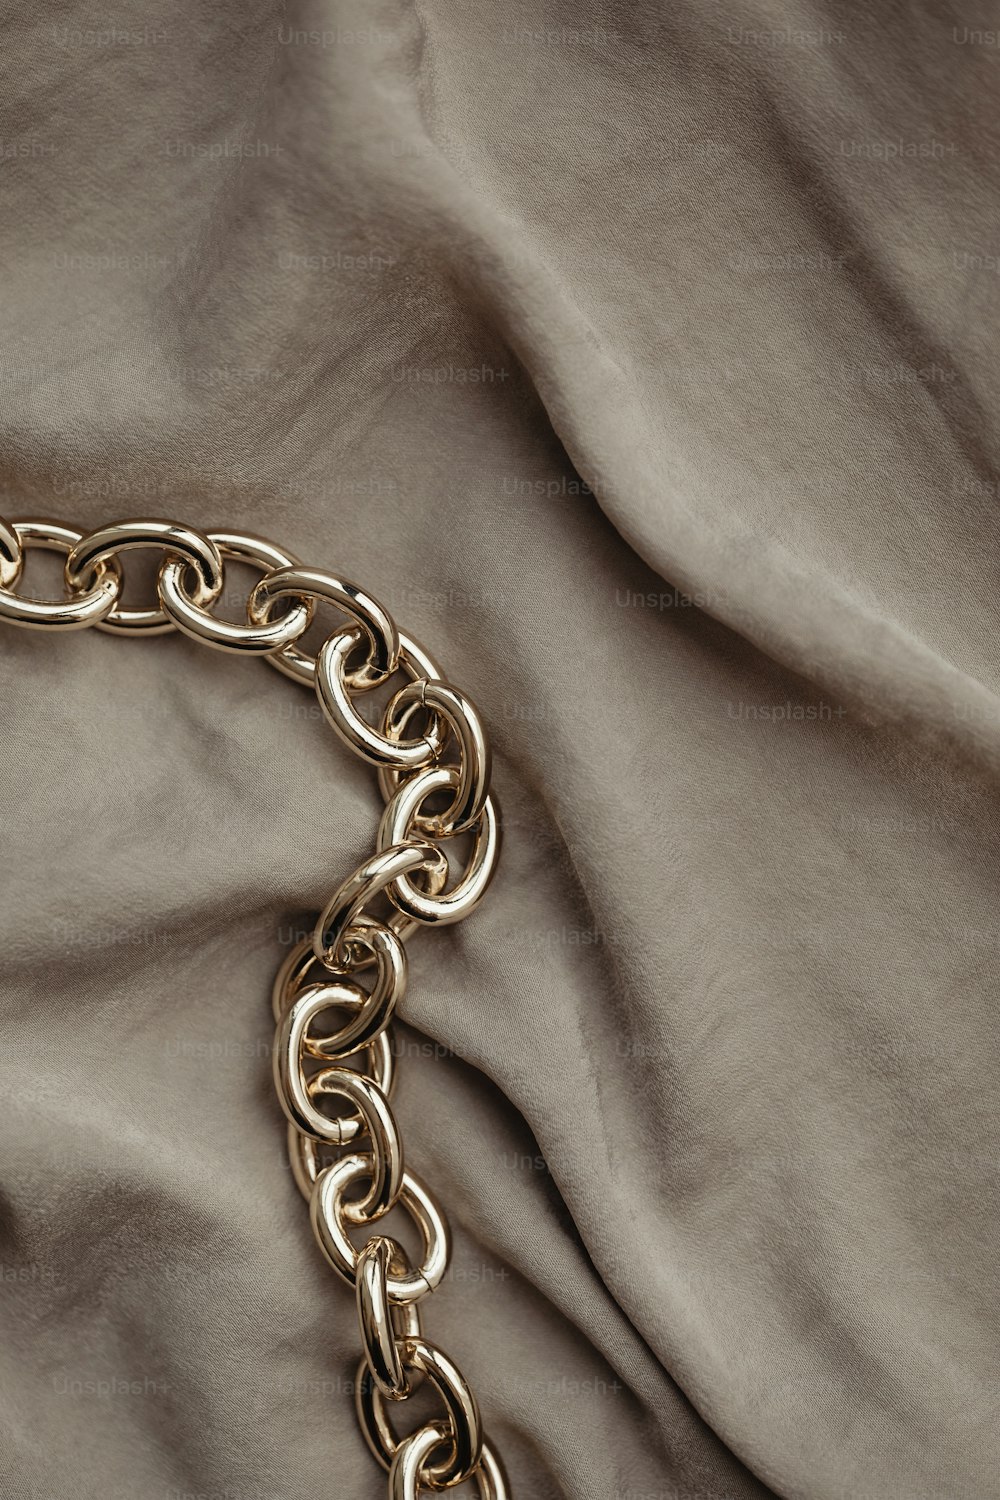 Un primer plano de una cadena de oro en una cama